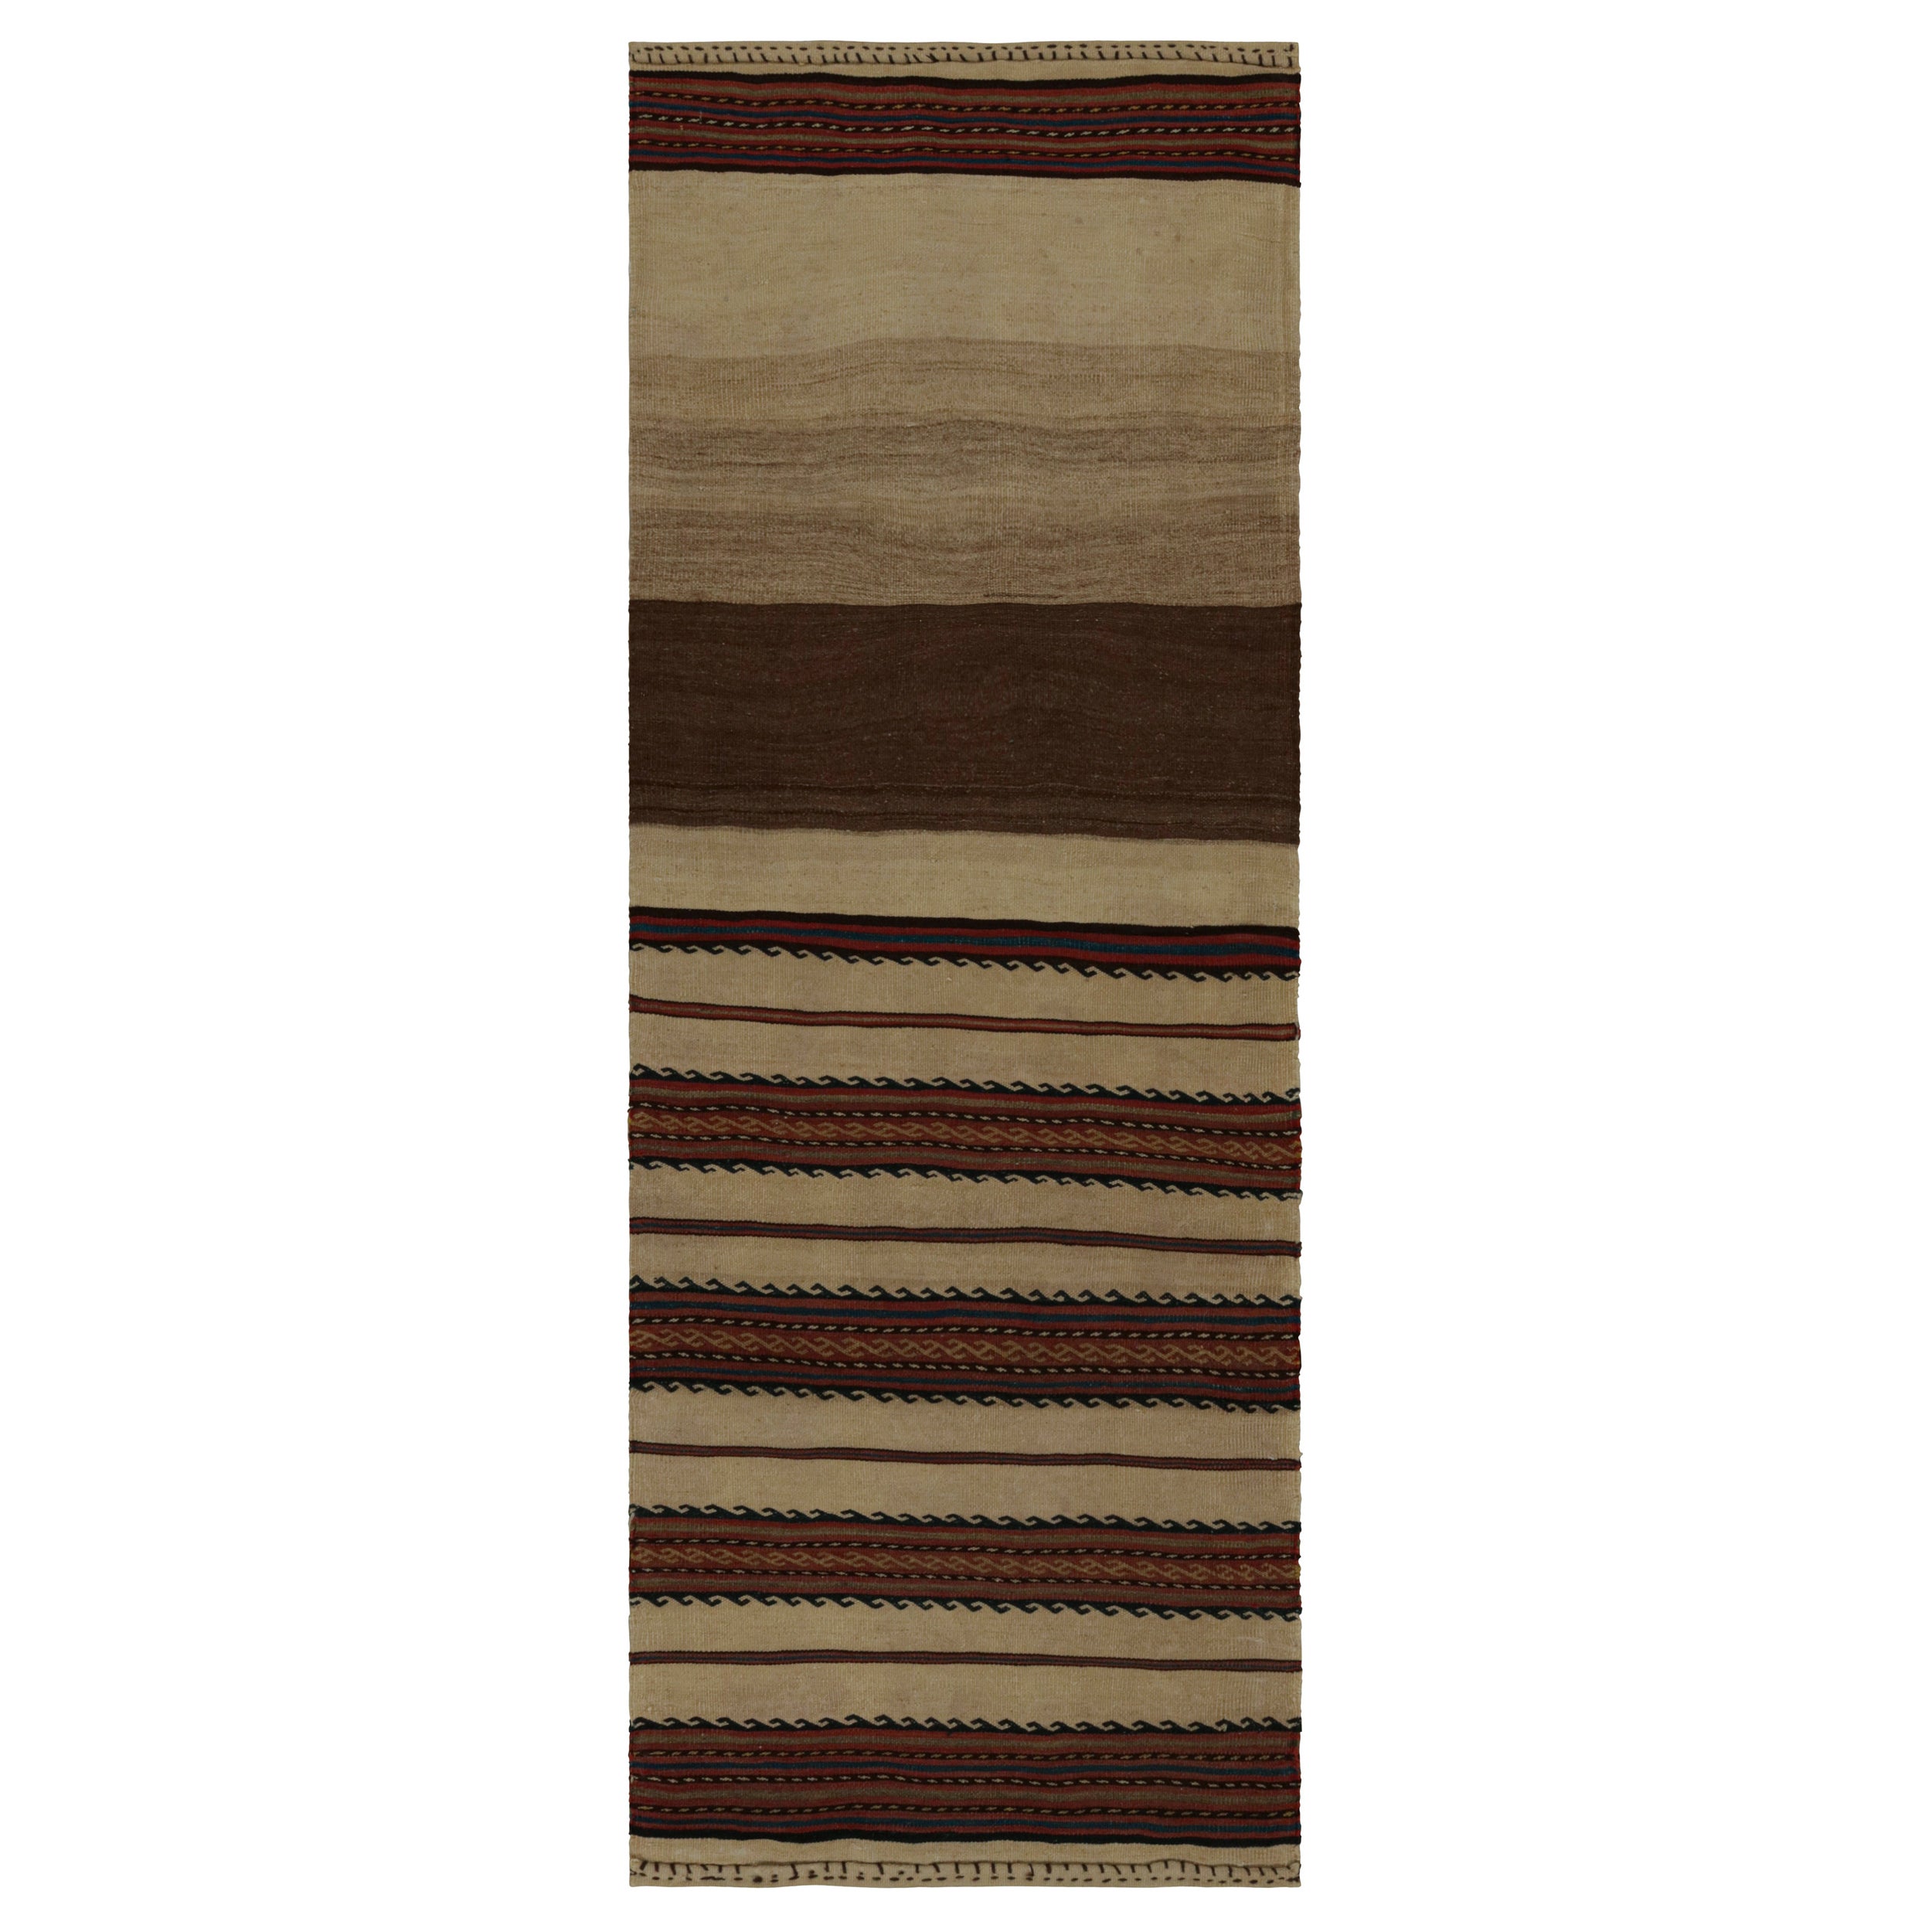 Vintage Afghani tribal Kilim runner rug, in Beige/brown, from Rug & Kilim